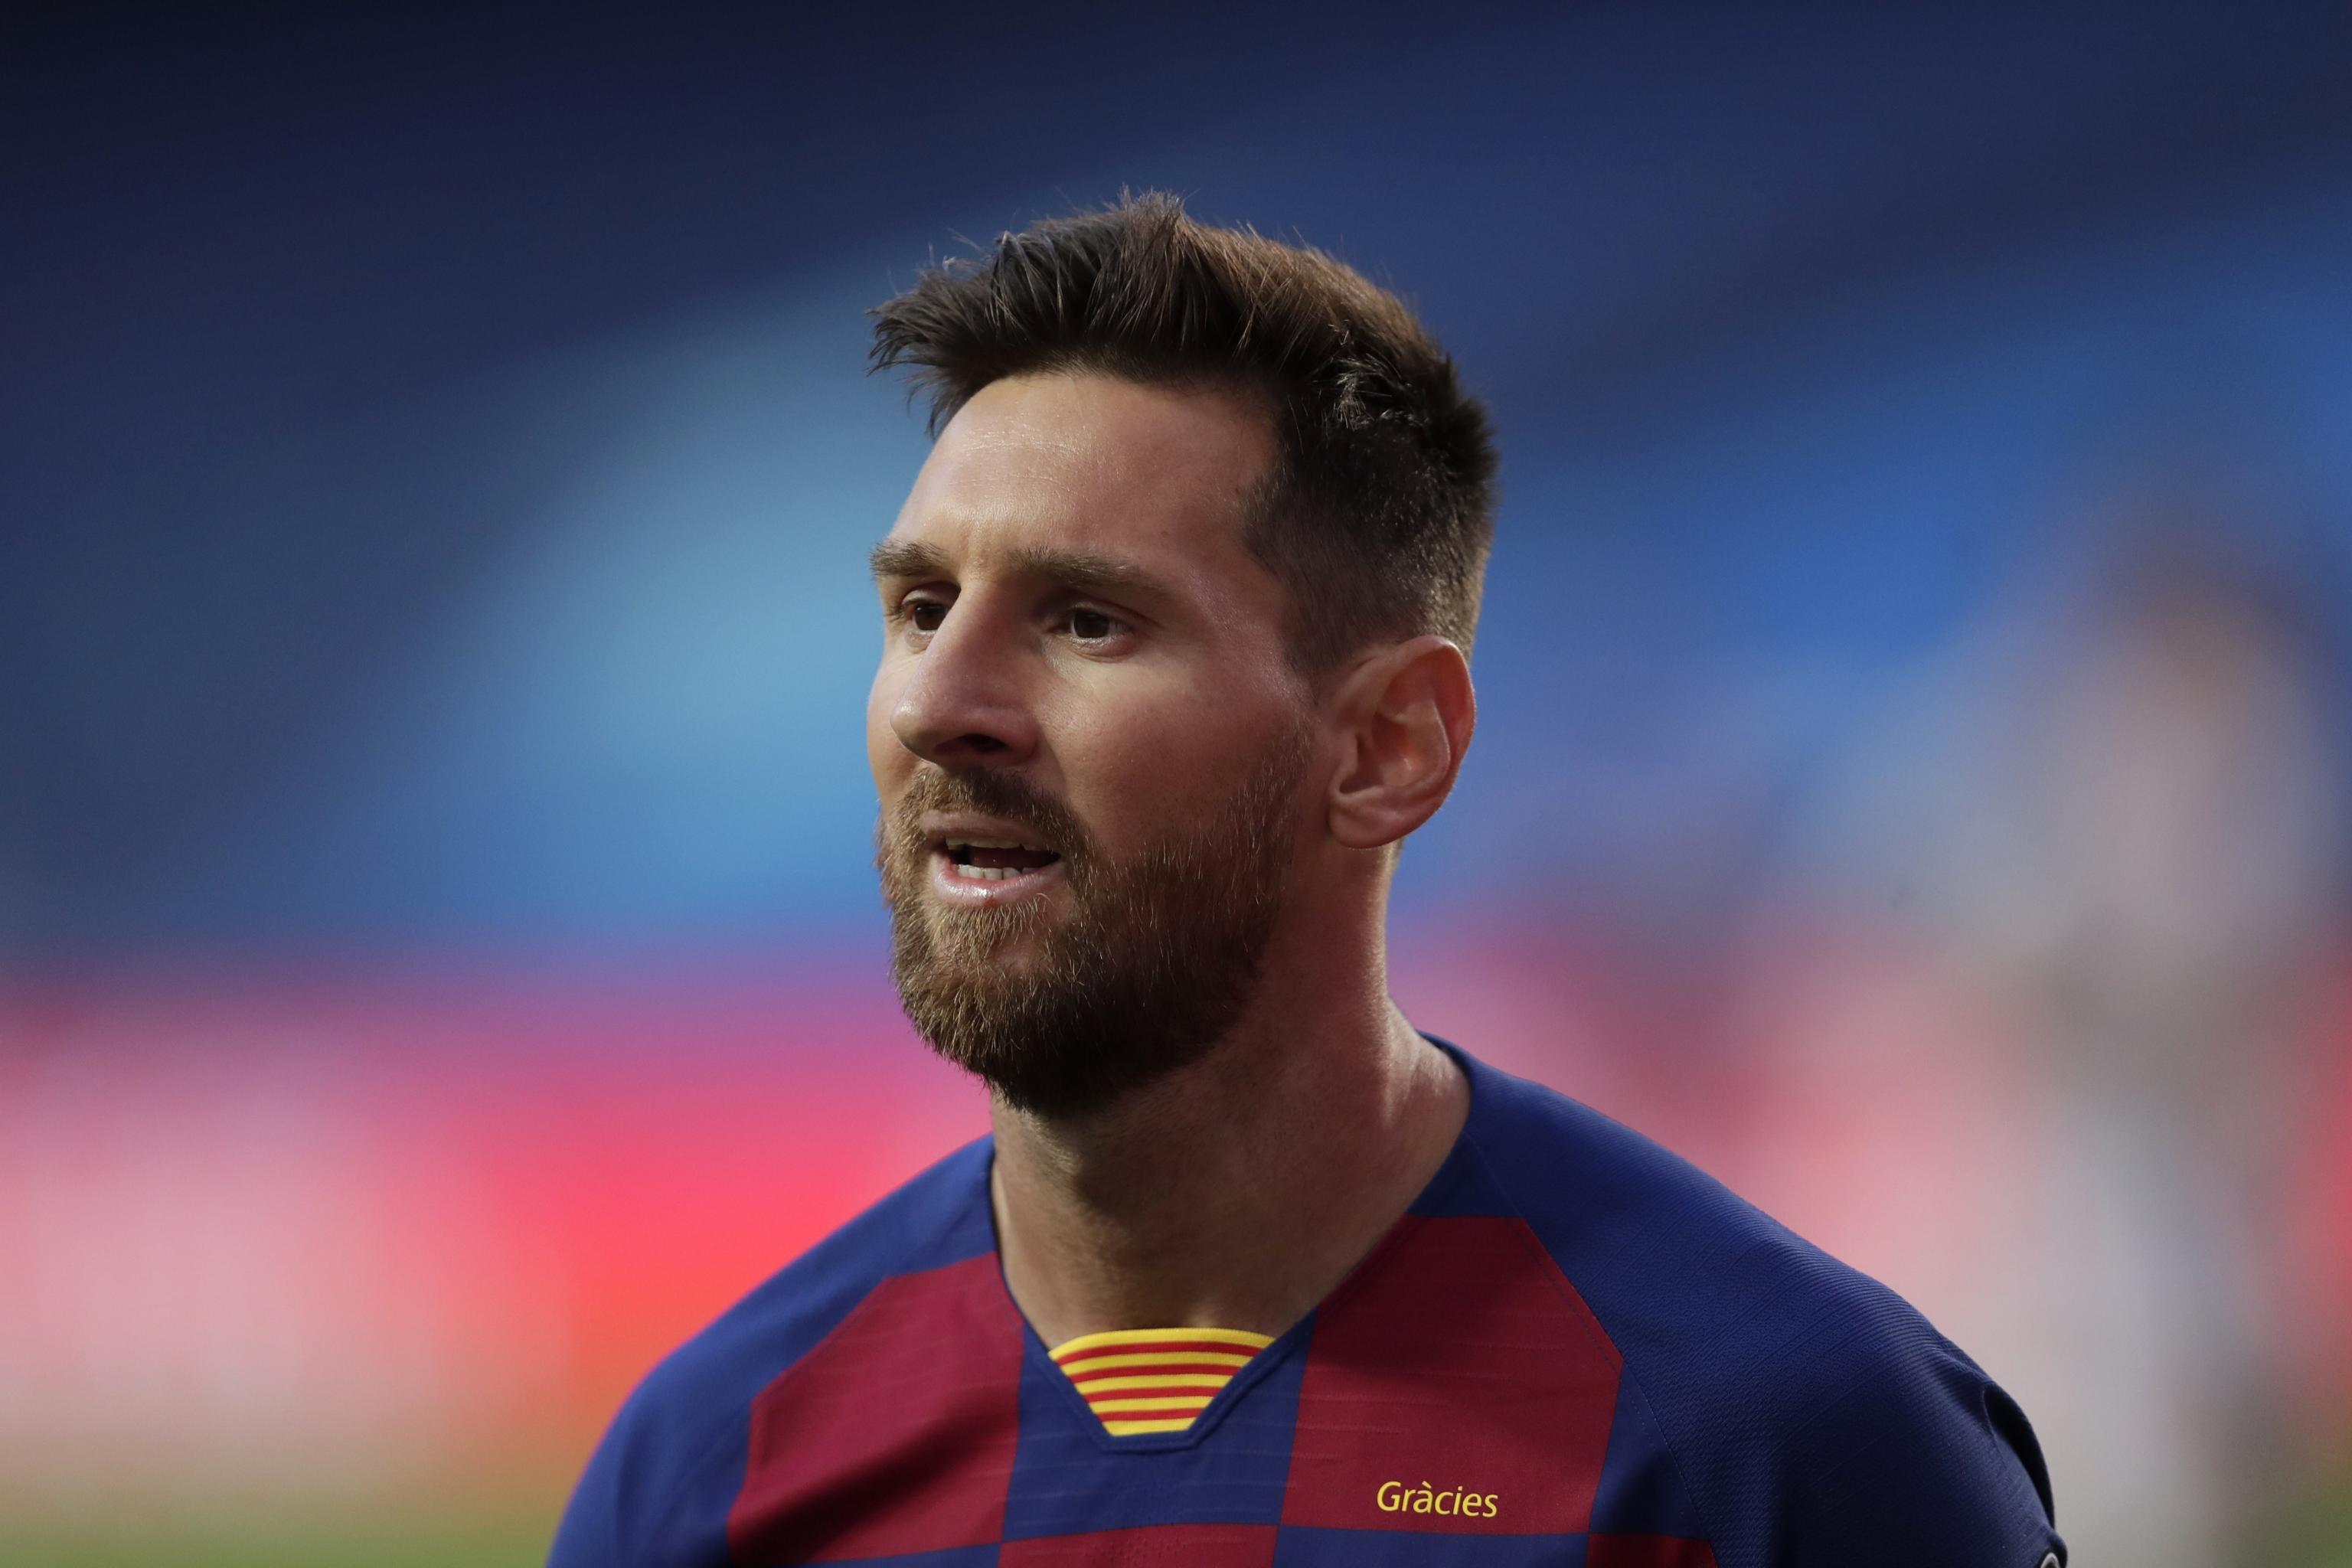 Quyết định ở lại của Lionel Messi khiến người hâm mộ rất phấn khích và tự hào. Cùng chiêm ngưỡng hình ảnh của siêu sao này và thấy rõ sự quyết tâm, chuyên nghiệp của anh trong các trận đấu bóng đá.